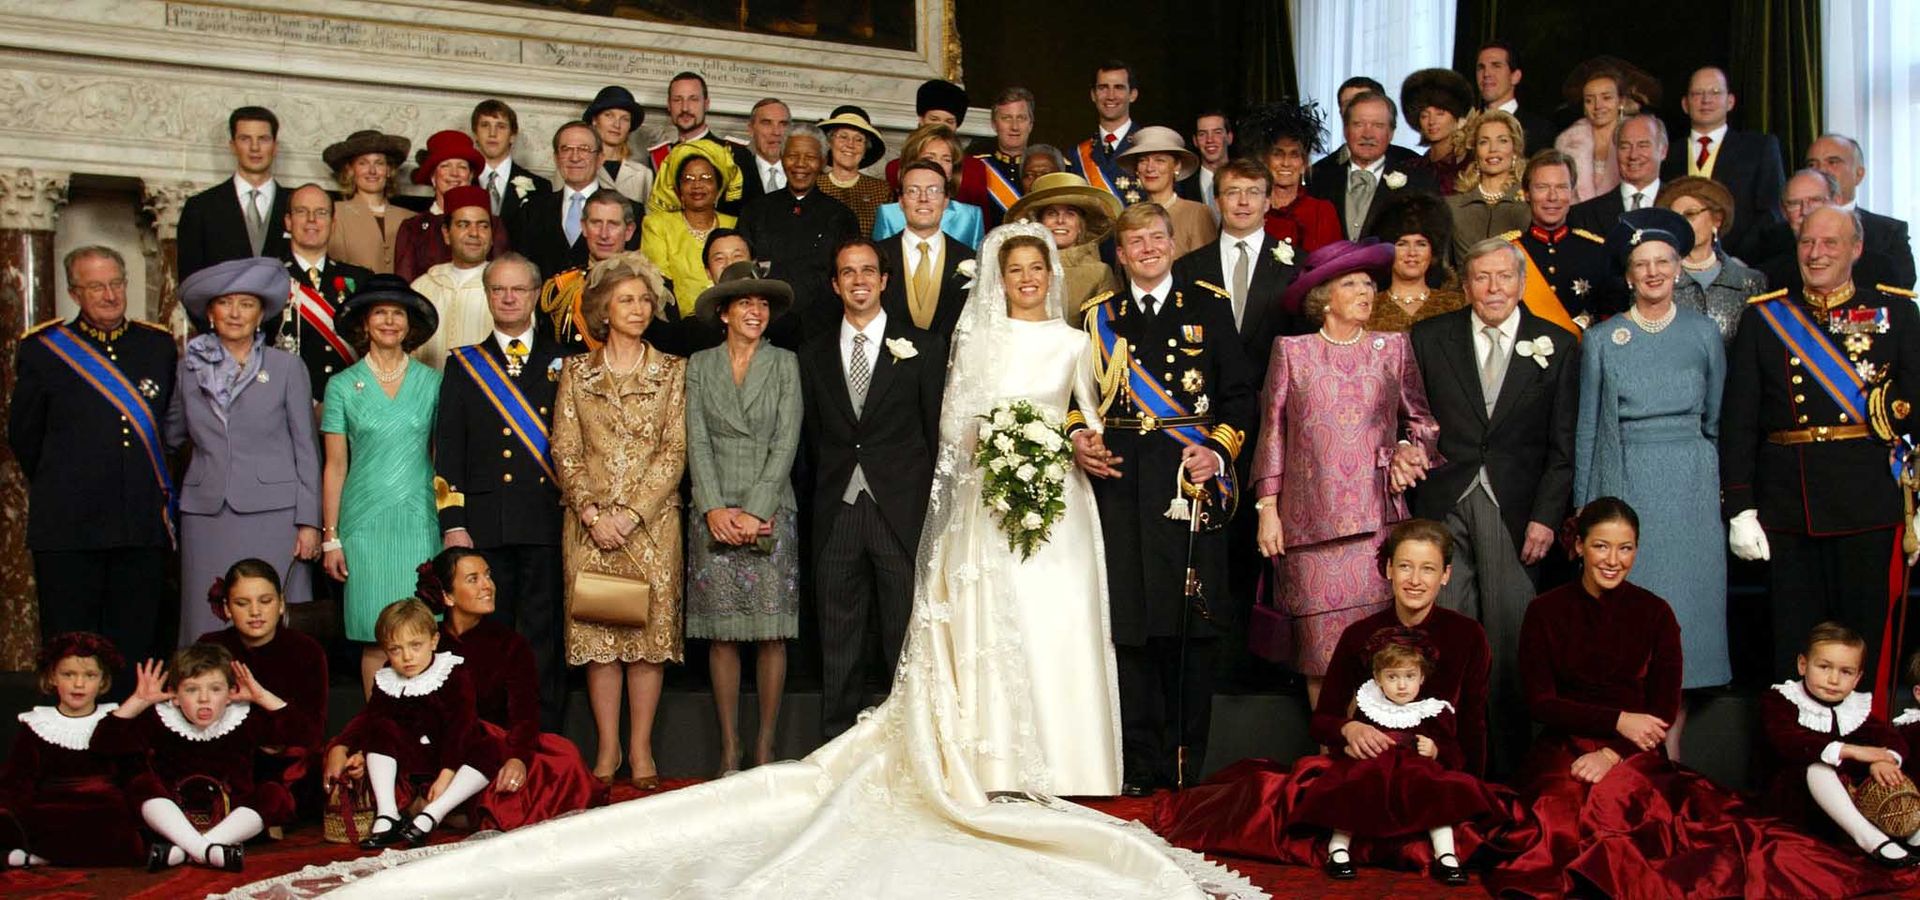 Inés (linksonder) was bruidsmeisje bij het huwelijk van Máxima en Willem-Alexander - 2002